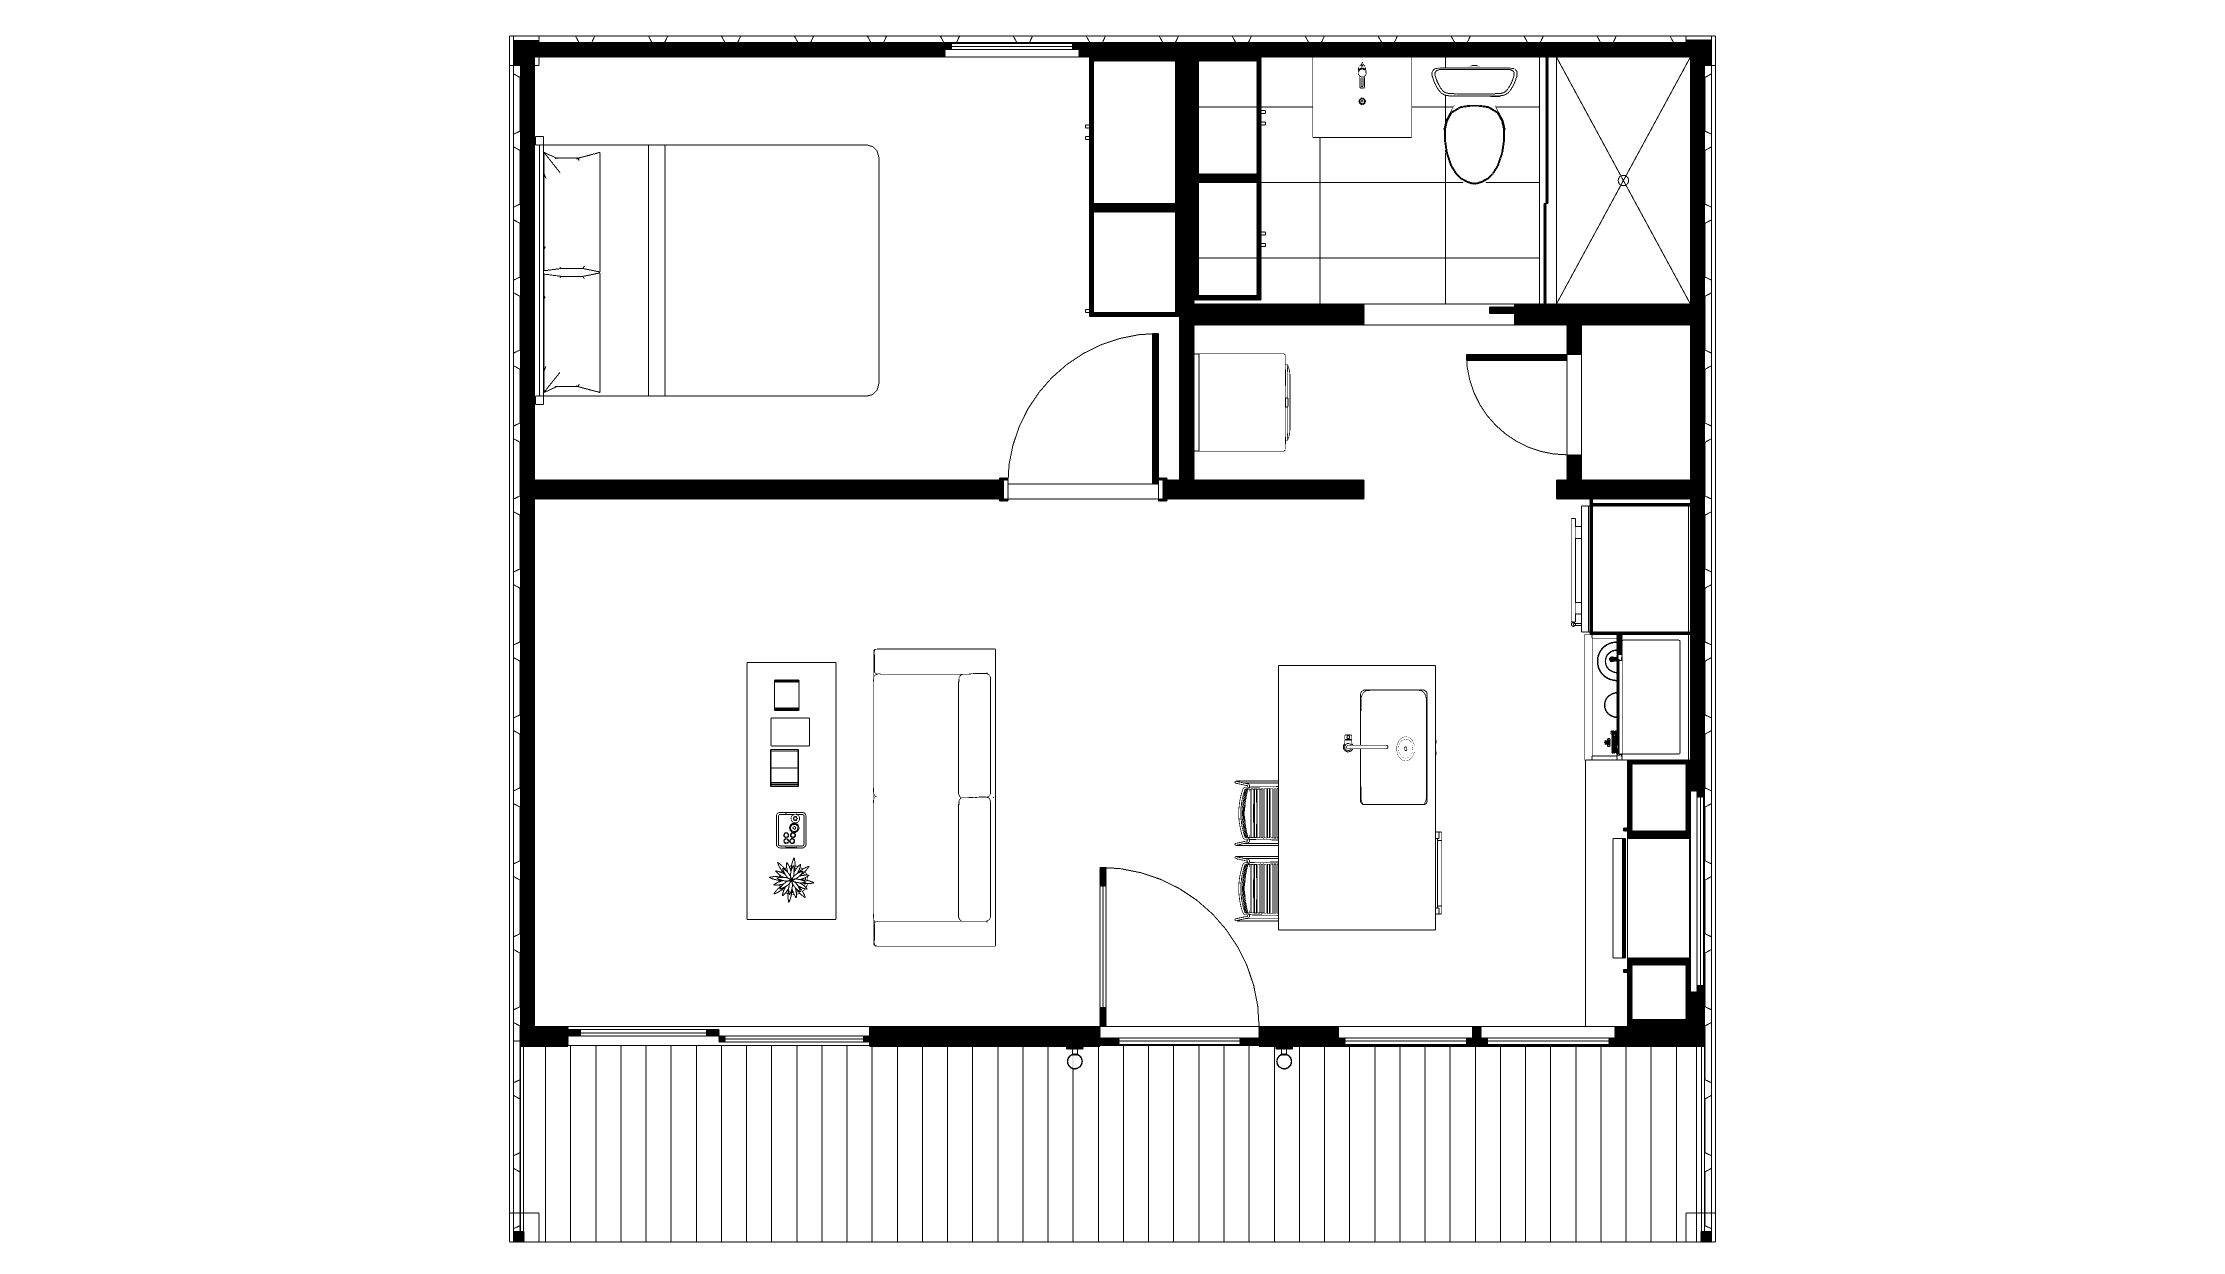 ADU Models — Bay Modular | Prefab Homes + Modular Buildings ...